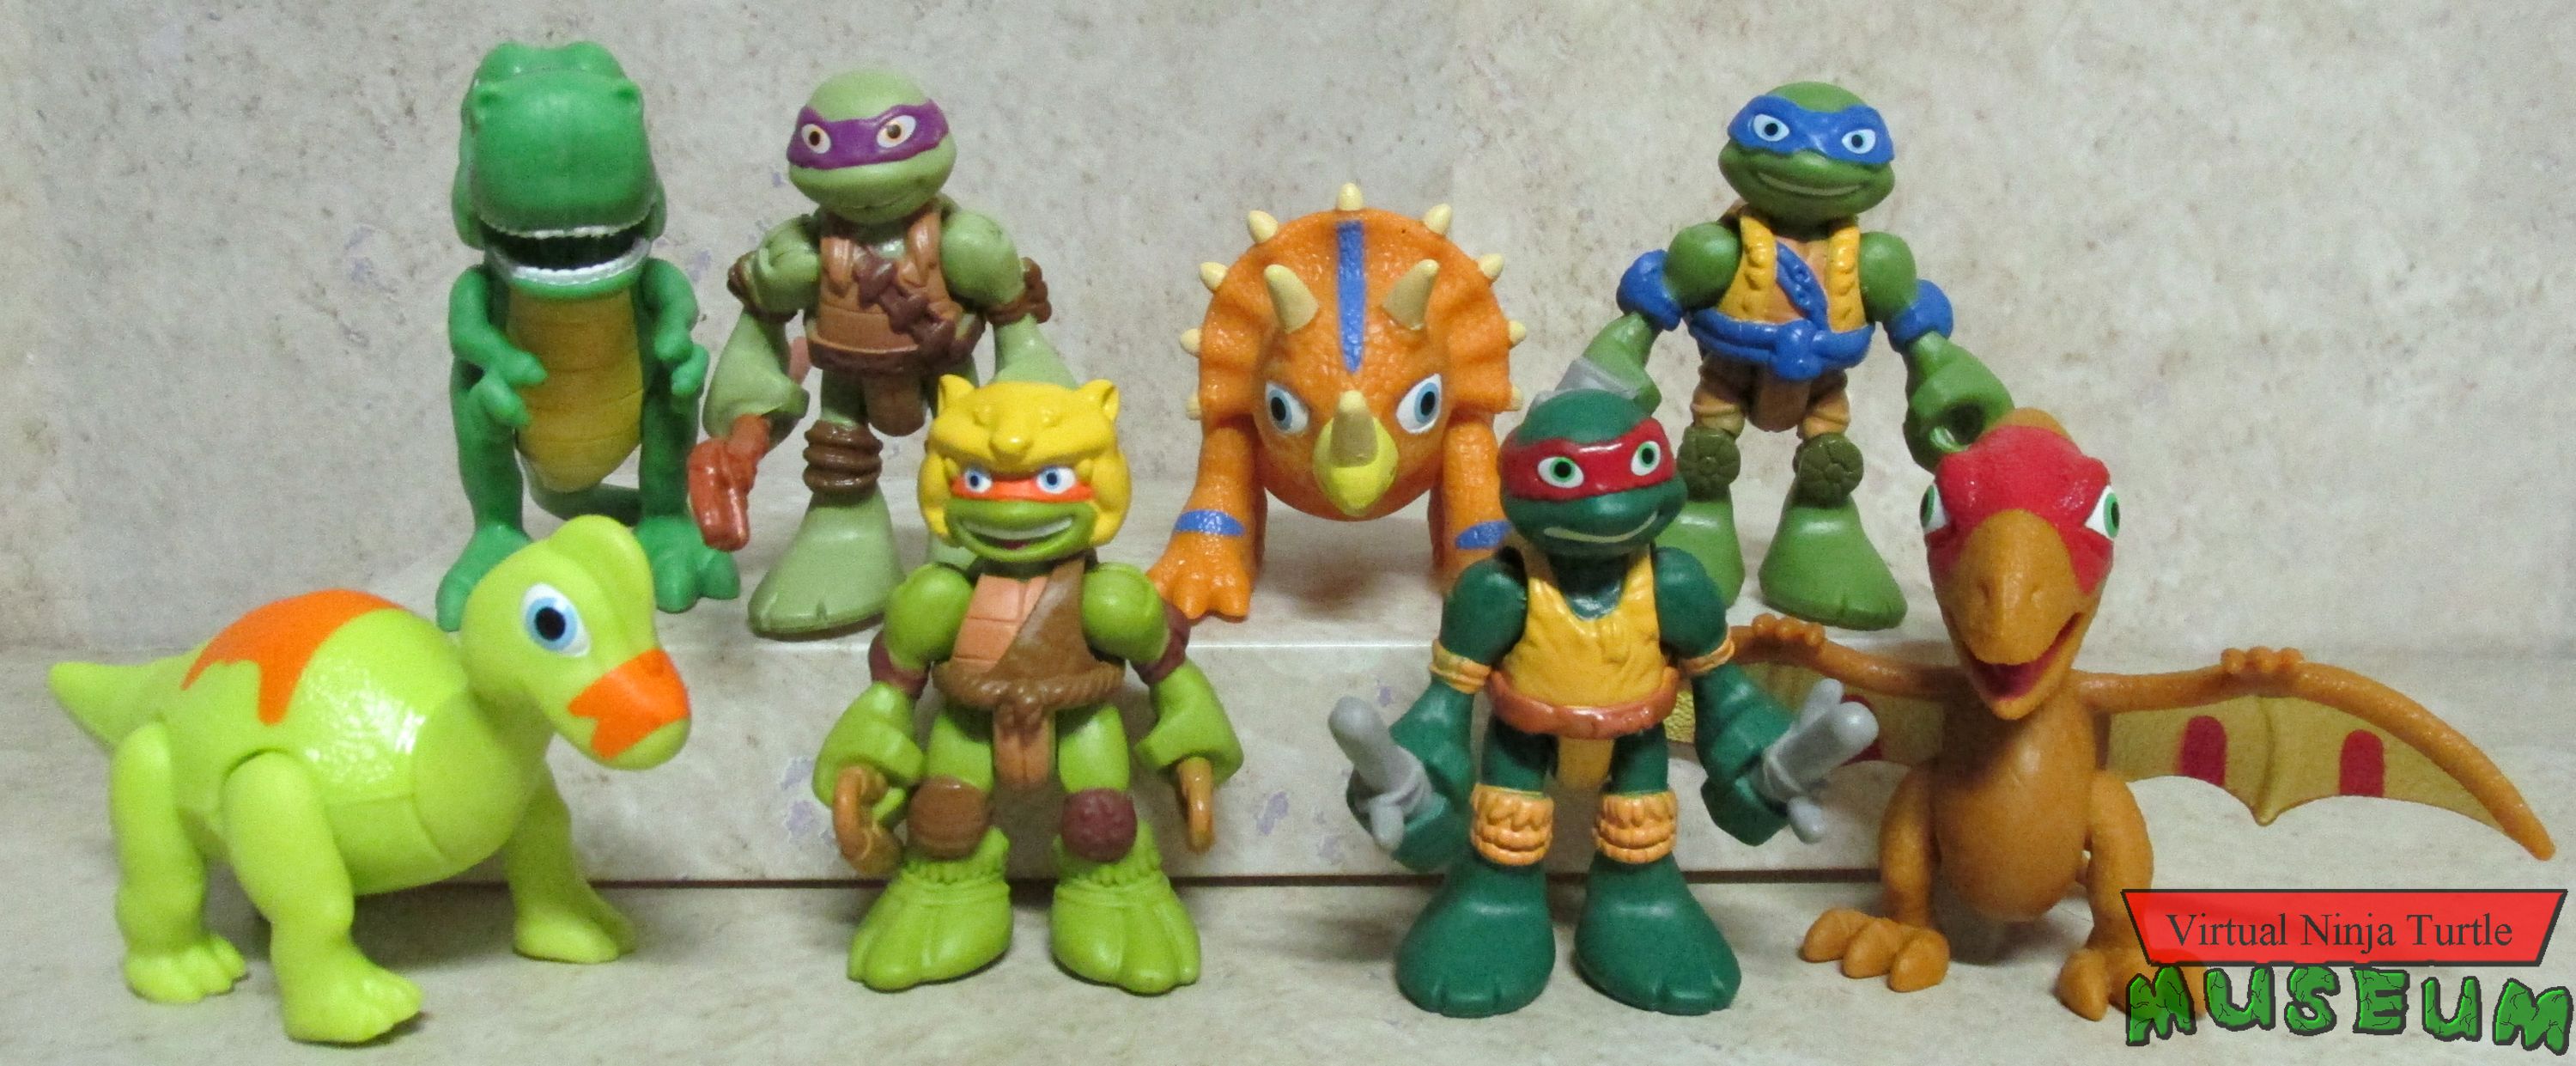 teenage mutant ninja turtles dinosaurs toys